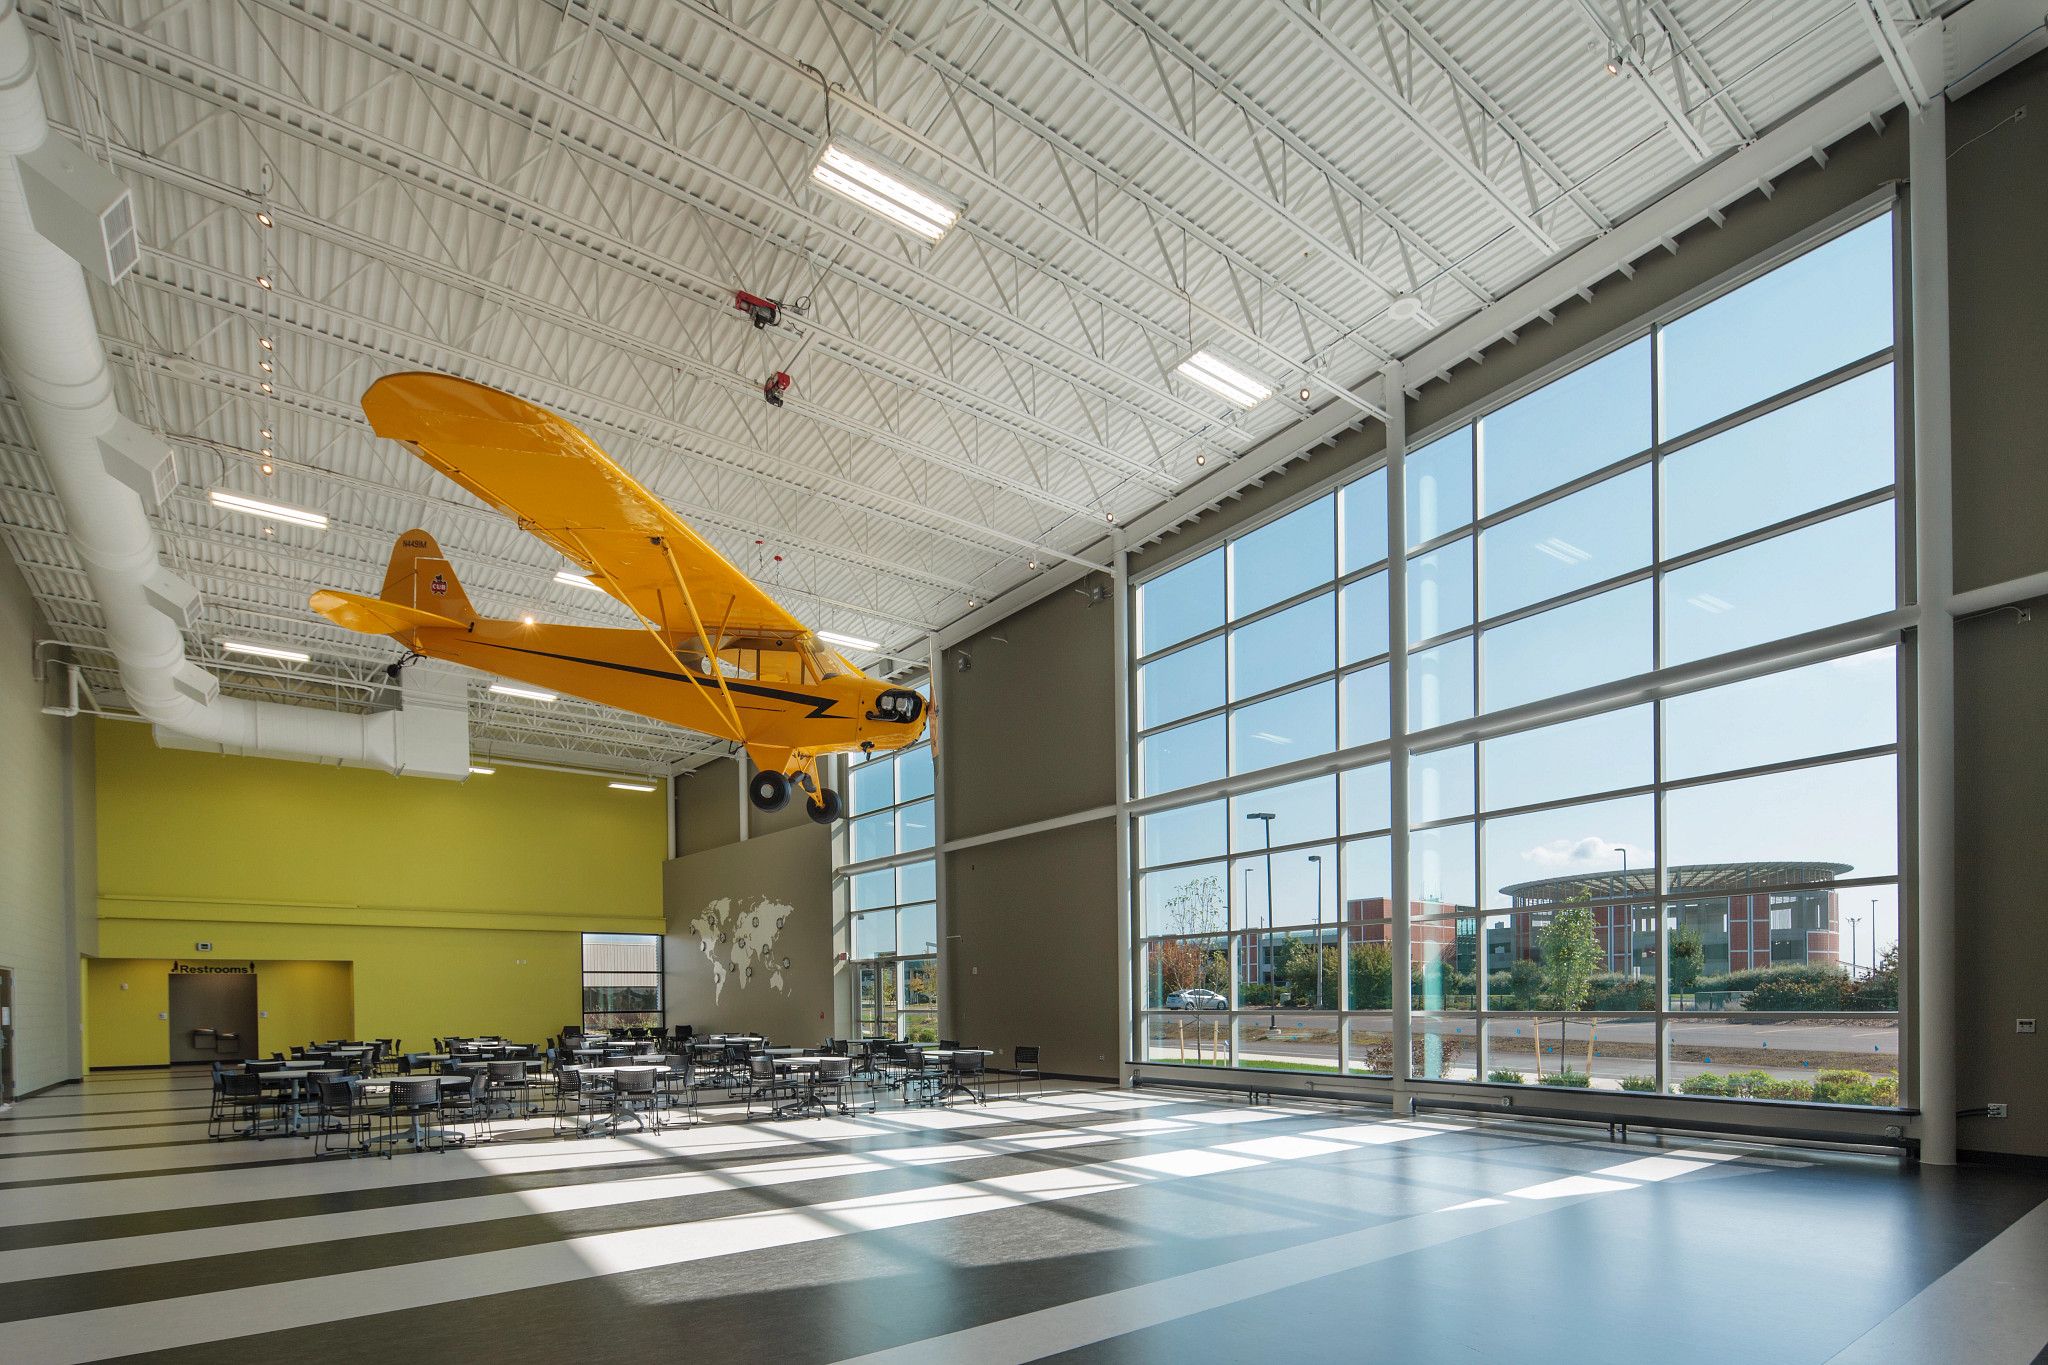 West Michigan Aviation Academy | Varco Pruden